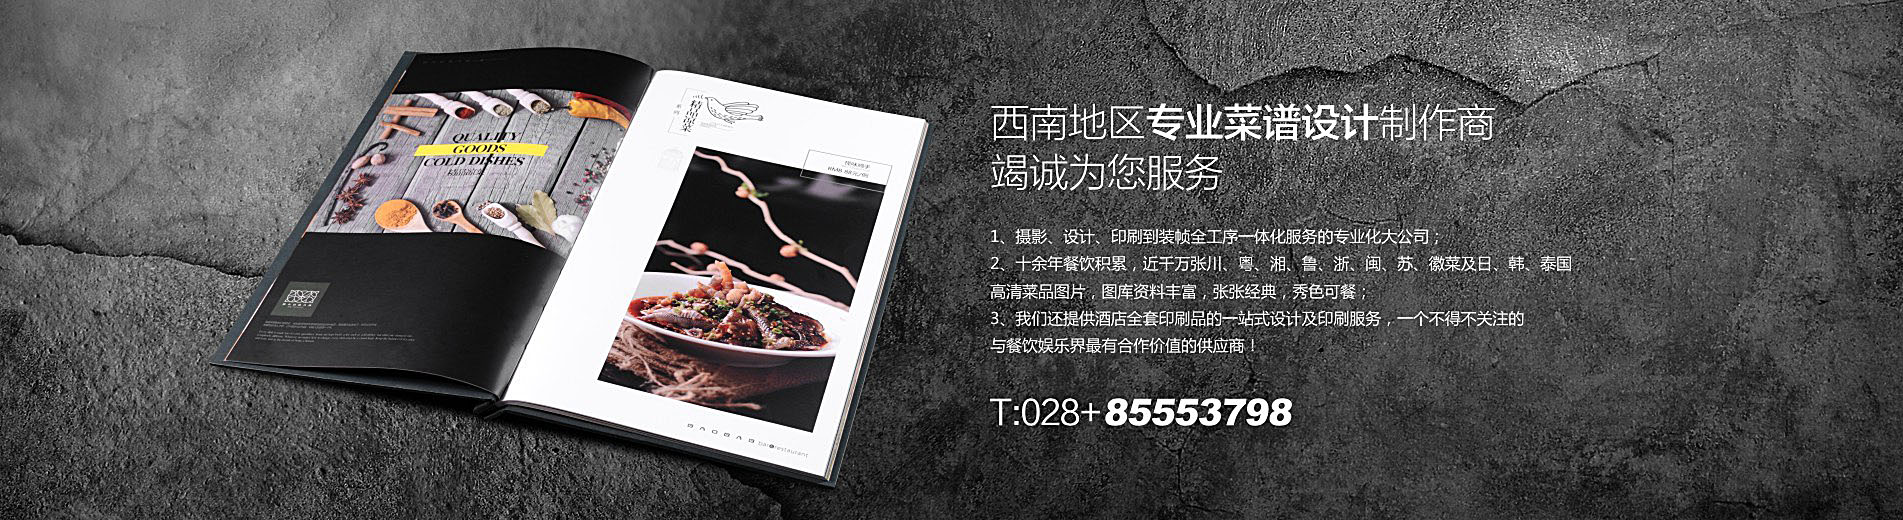 阿比都新疆餐厅菜单设计制作,特色新疆餐厅菜谱制作